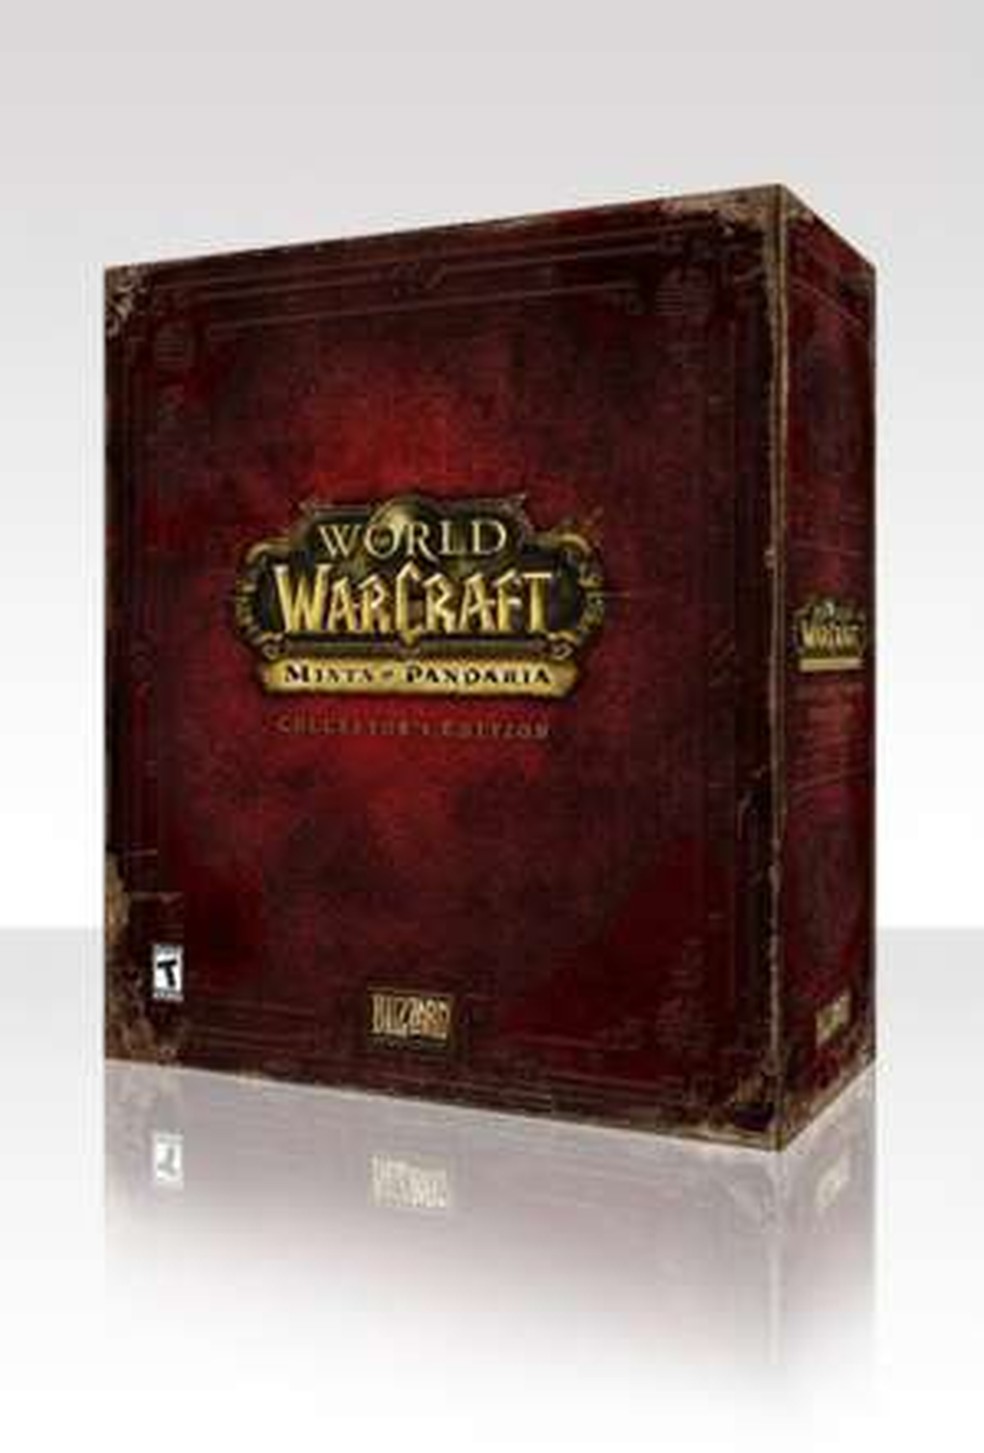 The Game Awards] Vão votar em quem? - Discussão Geral - World of Warcraft  Forums